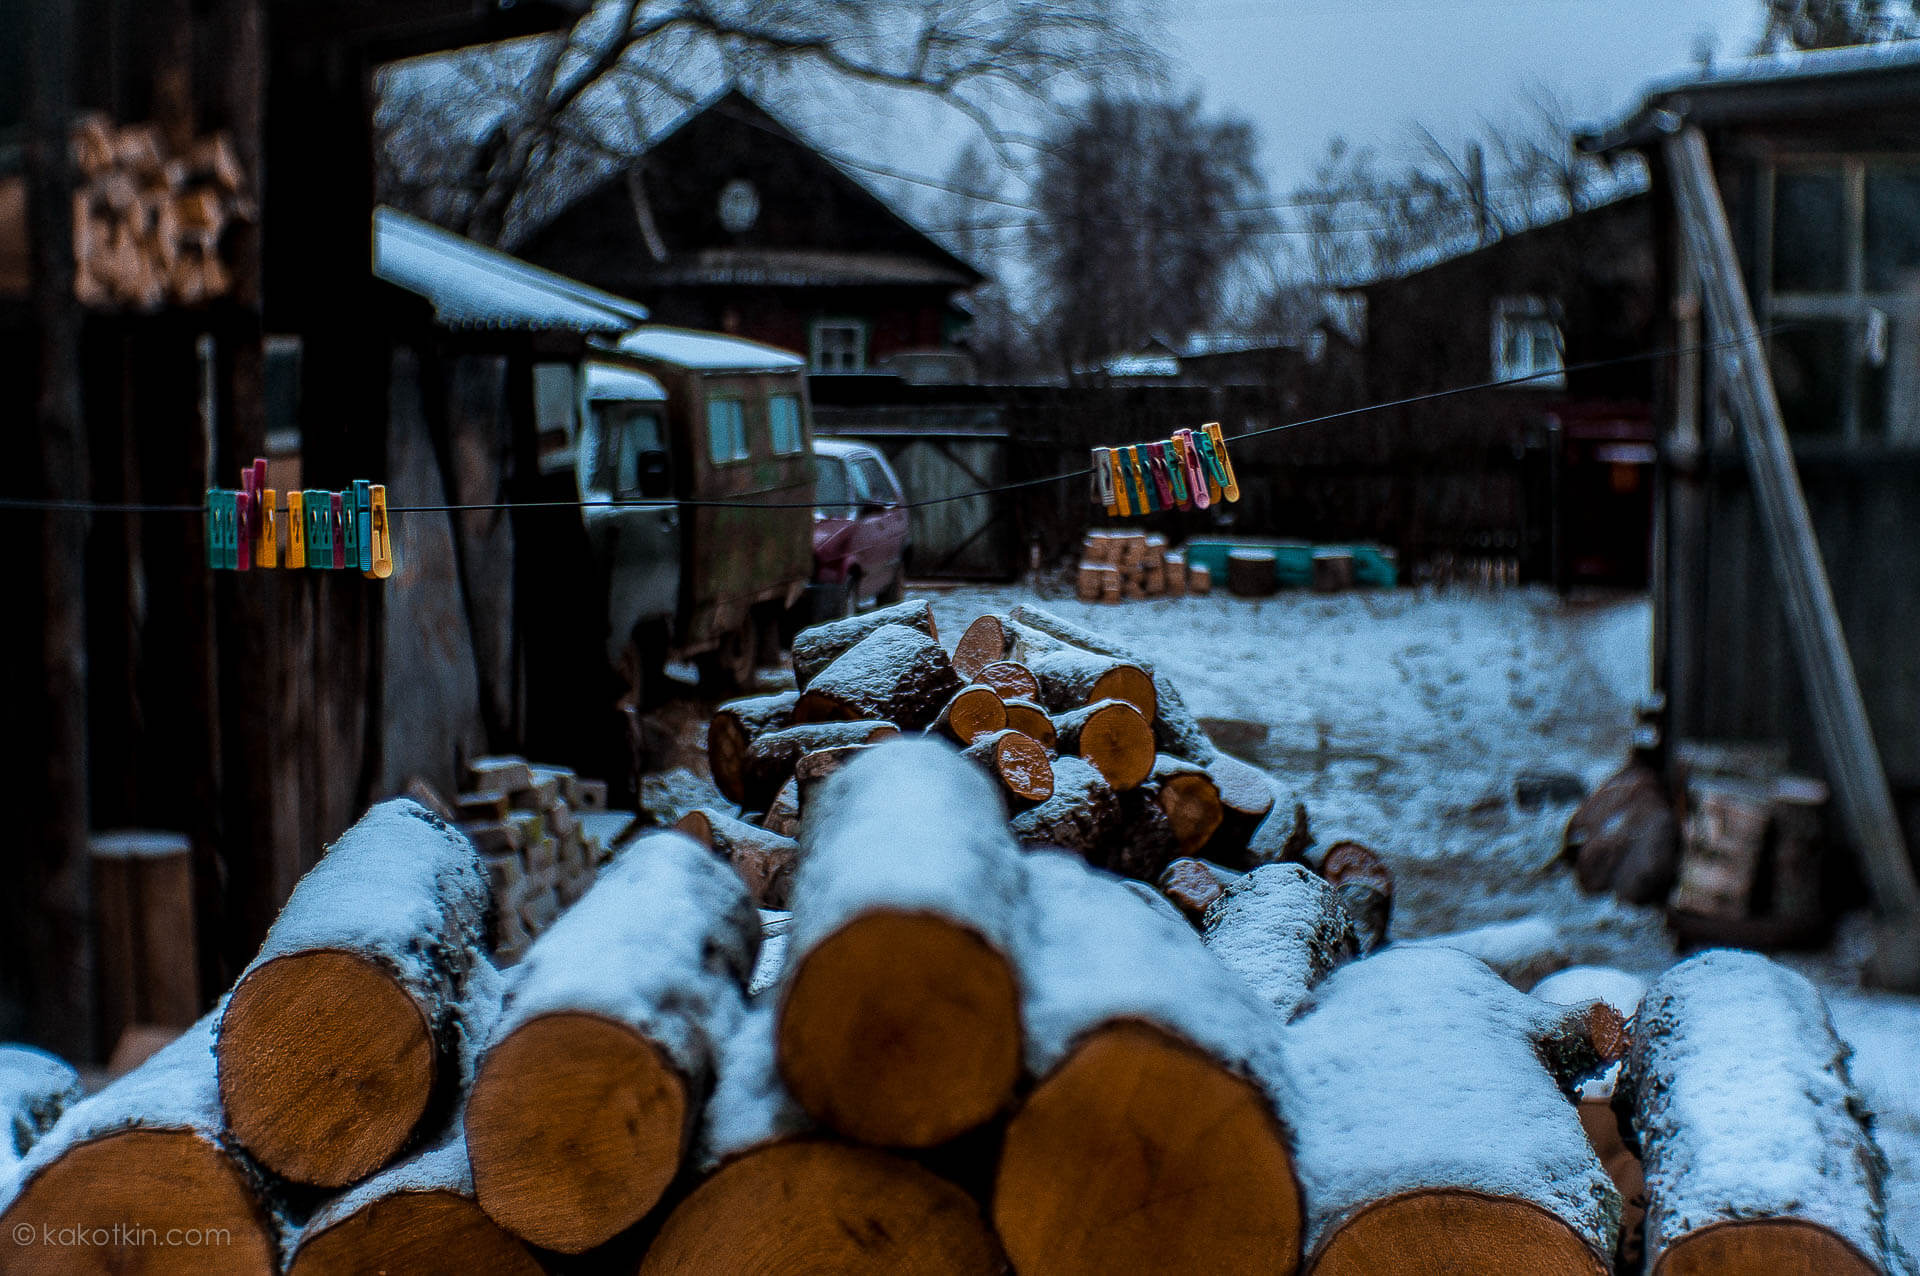 Новый год и Рождество в деревне, Максатиха Тверская область. Фотограф Роман Какоткин.